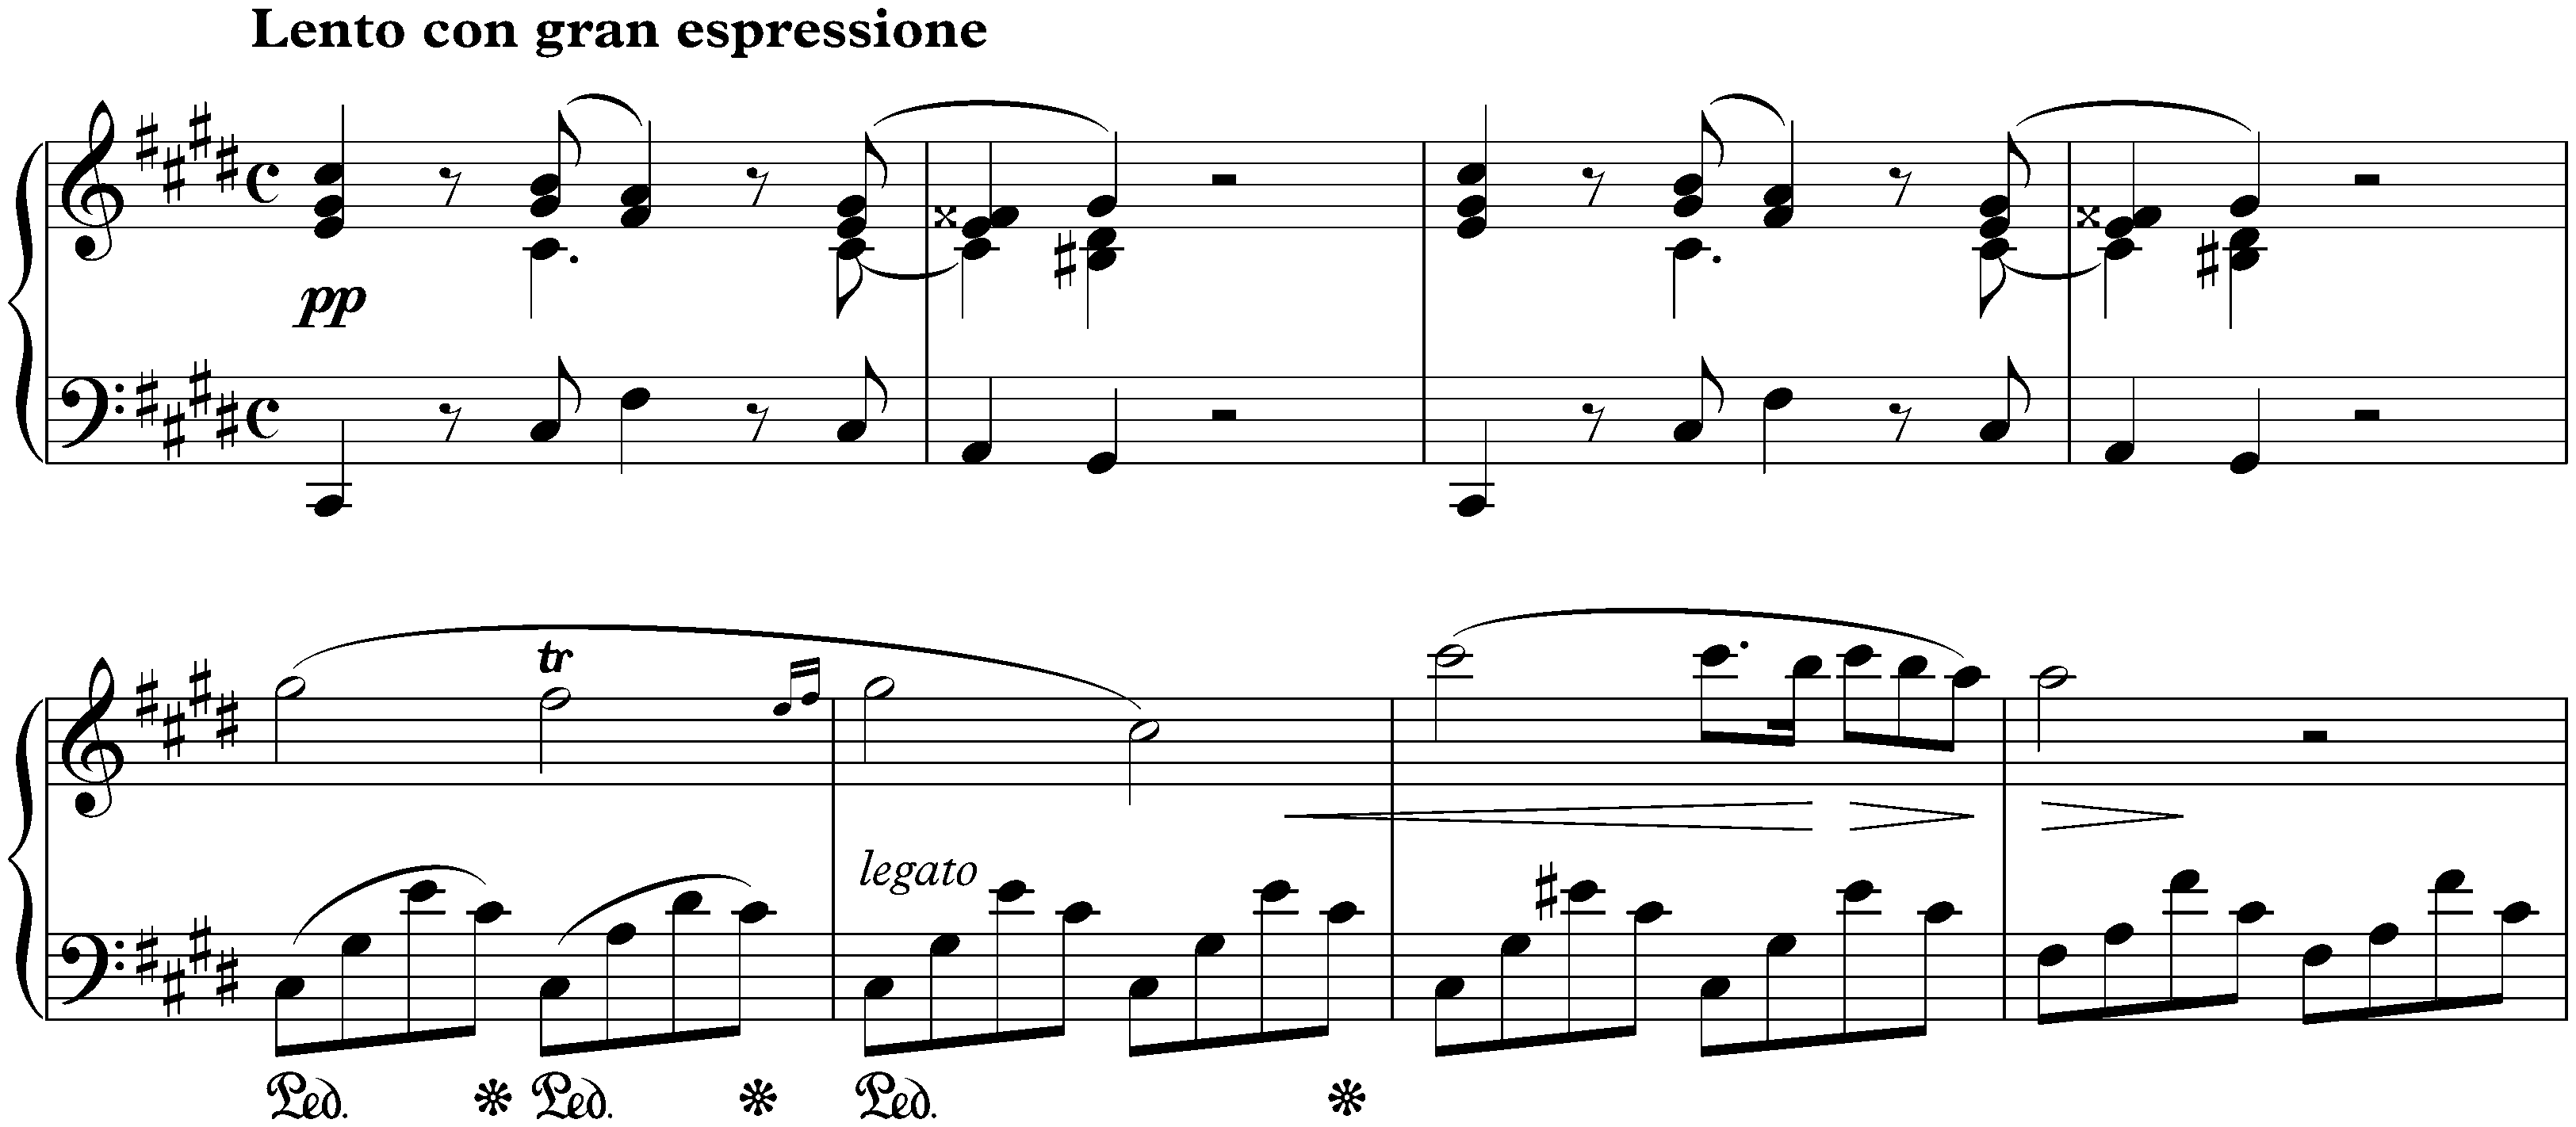 Lento con gran espressione in C-sharp minor, KK IVa/16